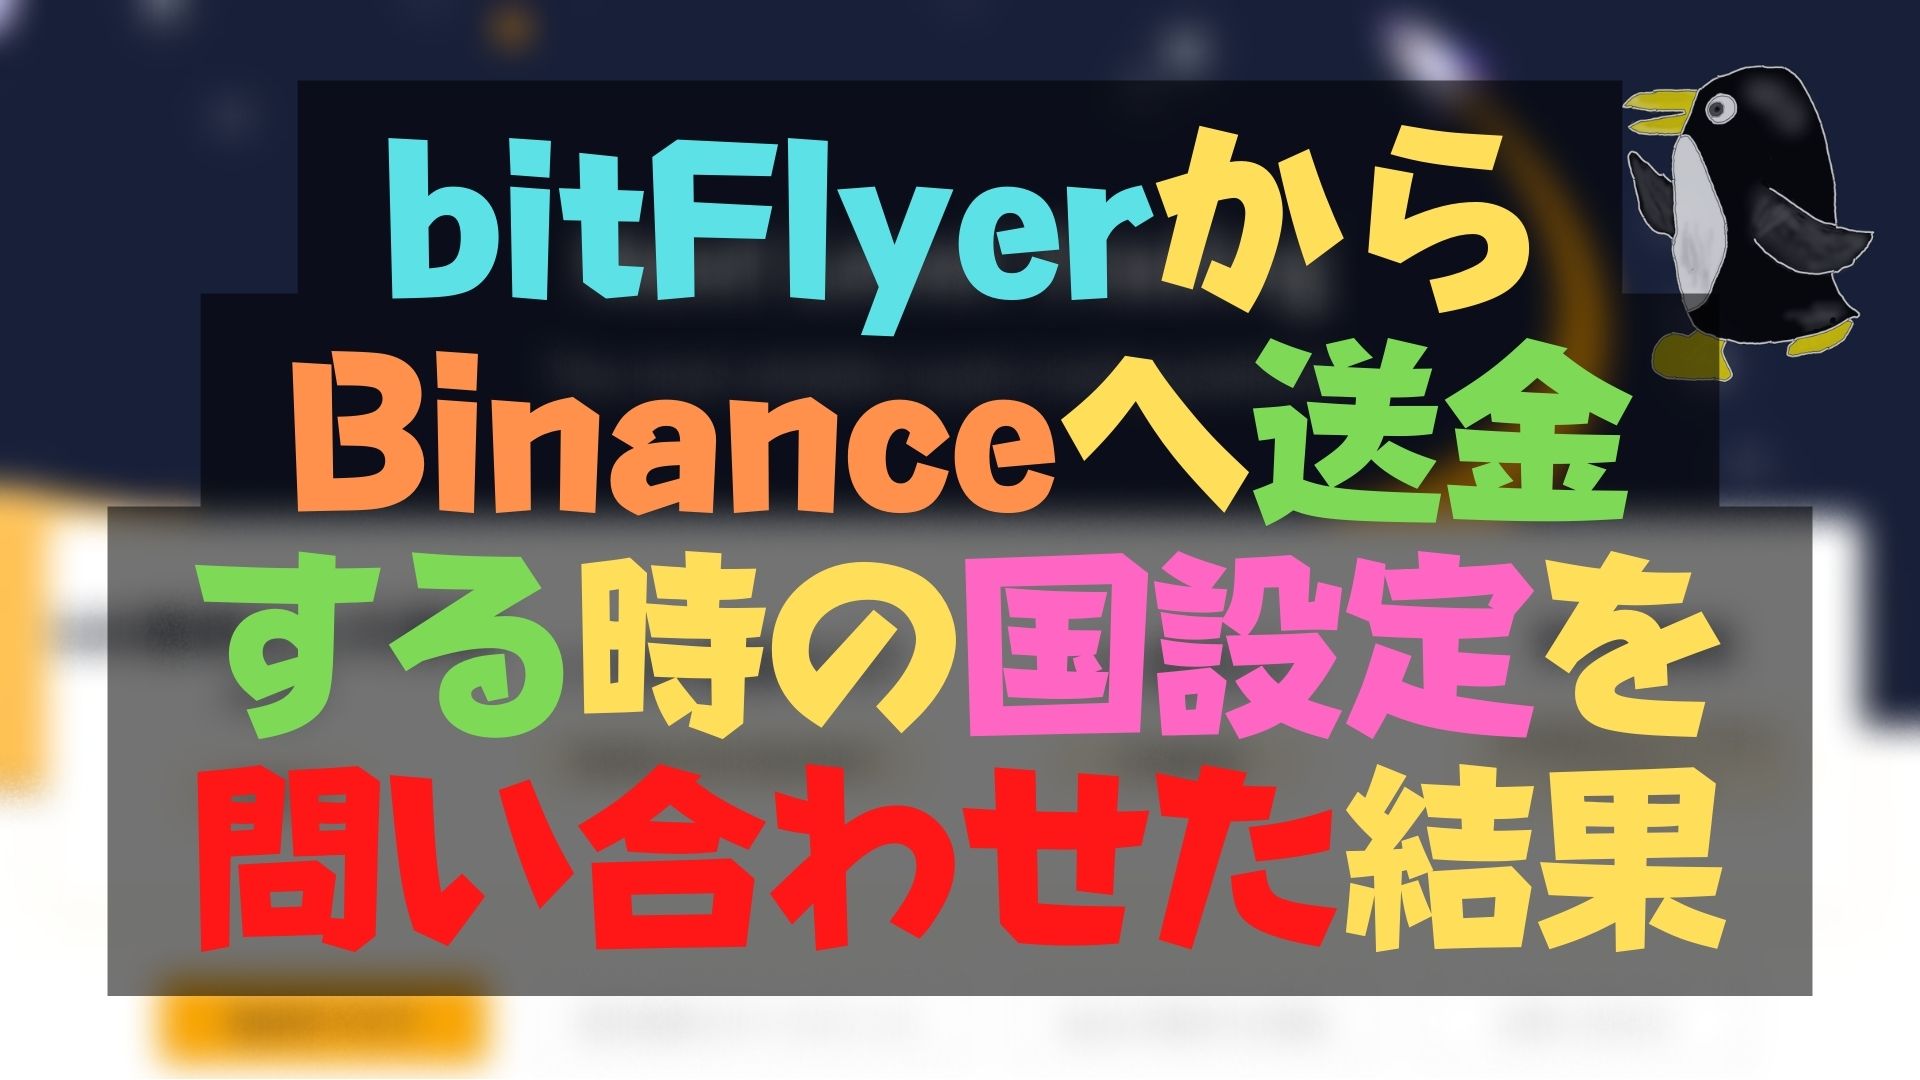 bitFlyerからBinance送金時の国設定を問い合わせた結果